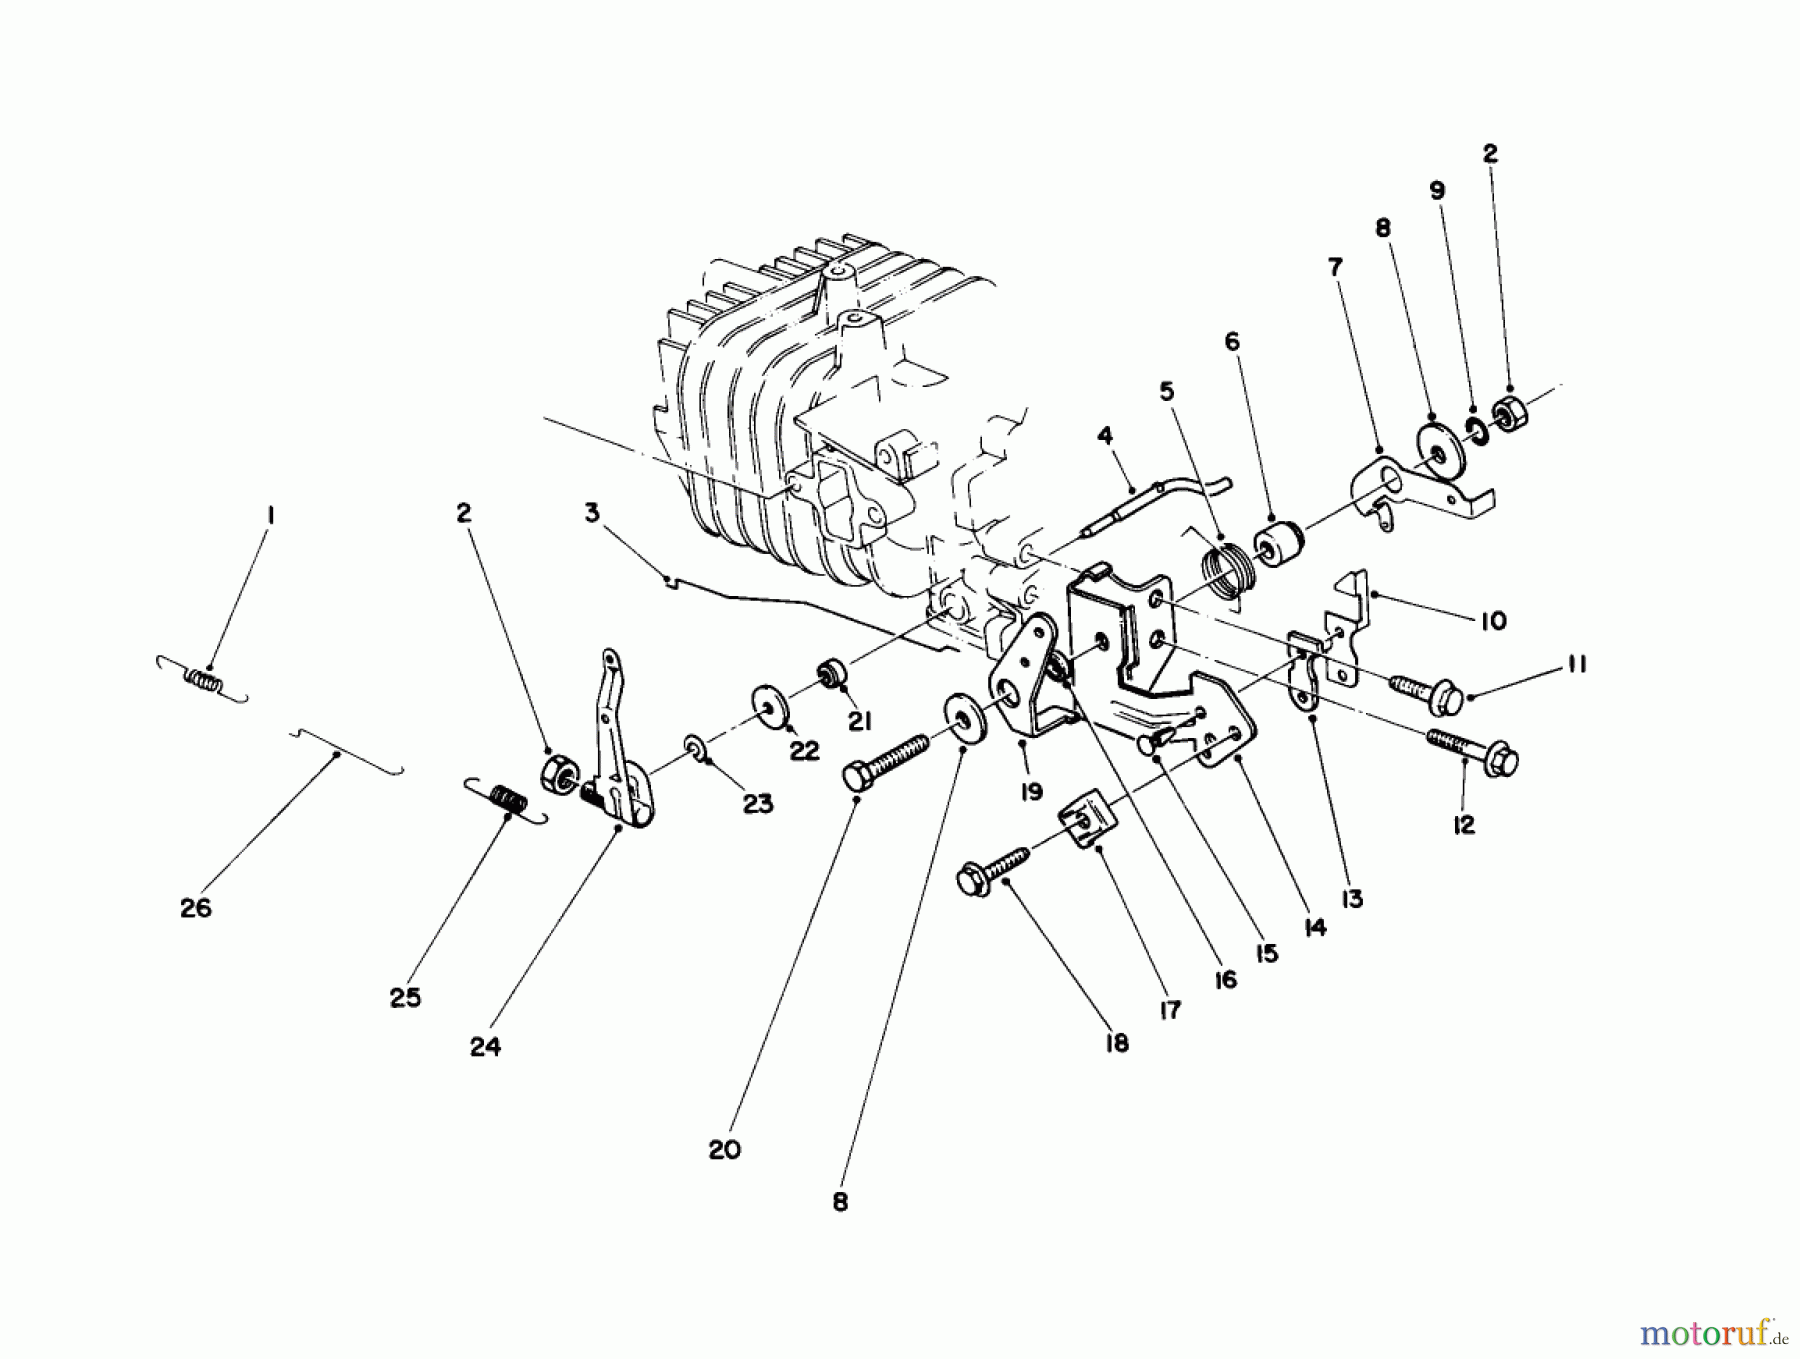  Toro Neu Mowers, Walk-Behind Seite 2 22025 - Toro Lawnmower, 1988 (8000001-8999999) ENGINE ASSEMBLY MODEL NO. 47PH7 #4